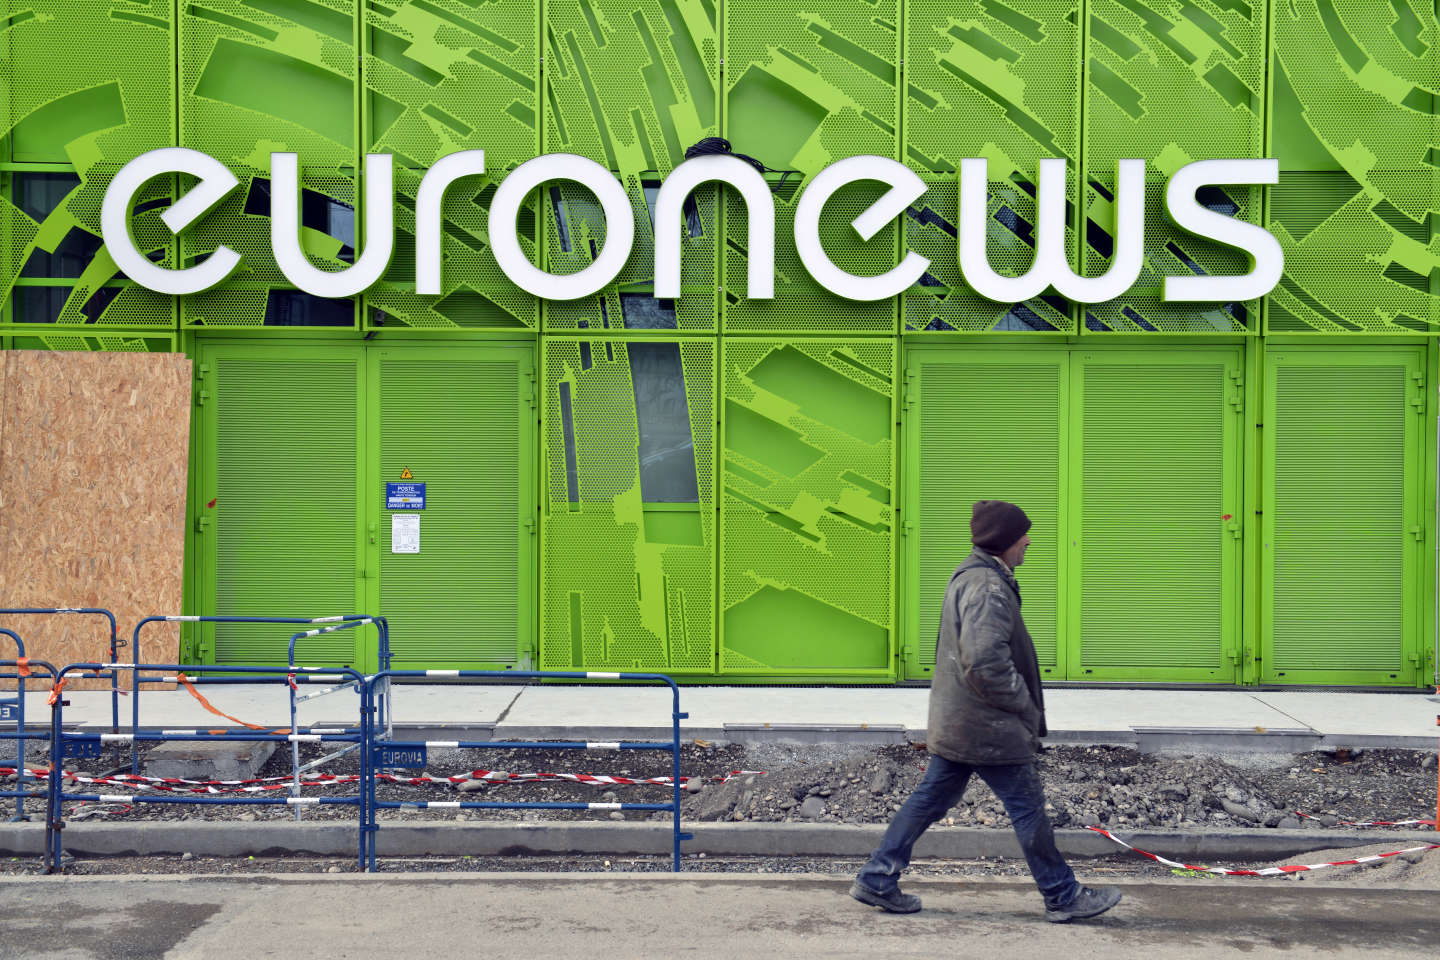 A Lyon, la direction d’Euronews annonce deux cents licenciements et le « redéploiement des équipes de journalistes »